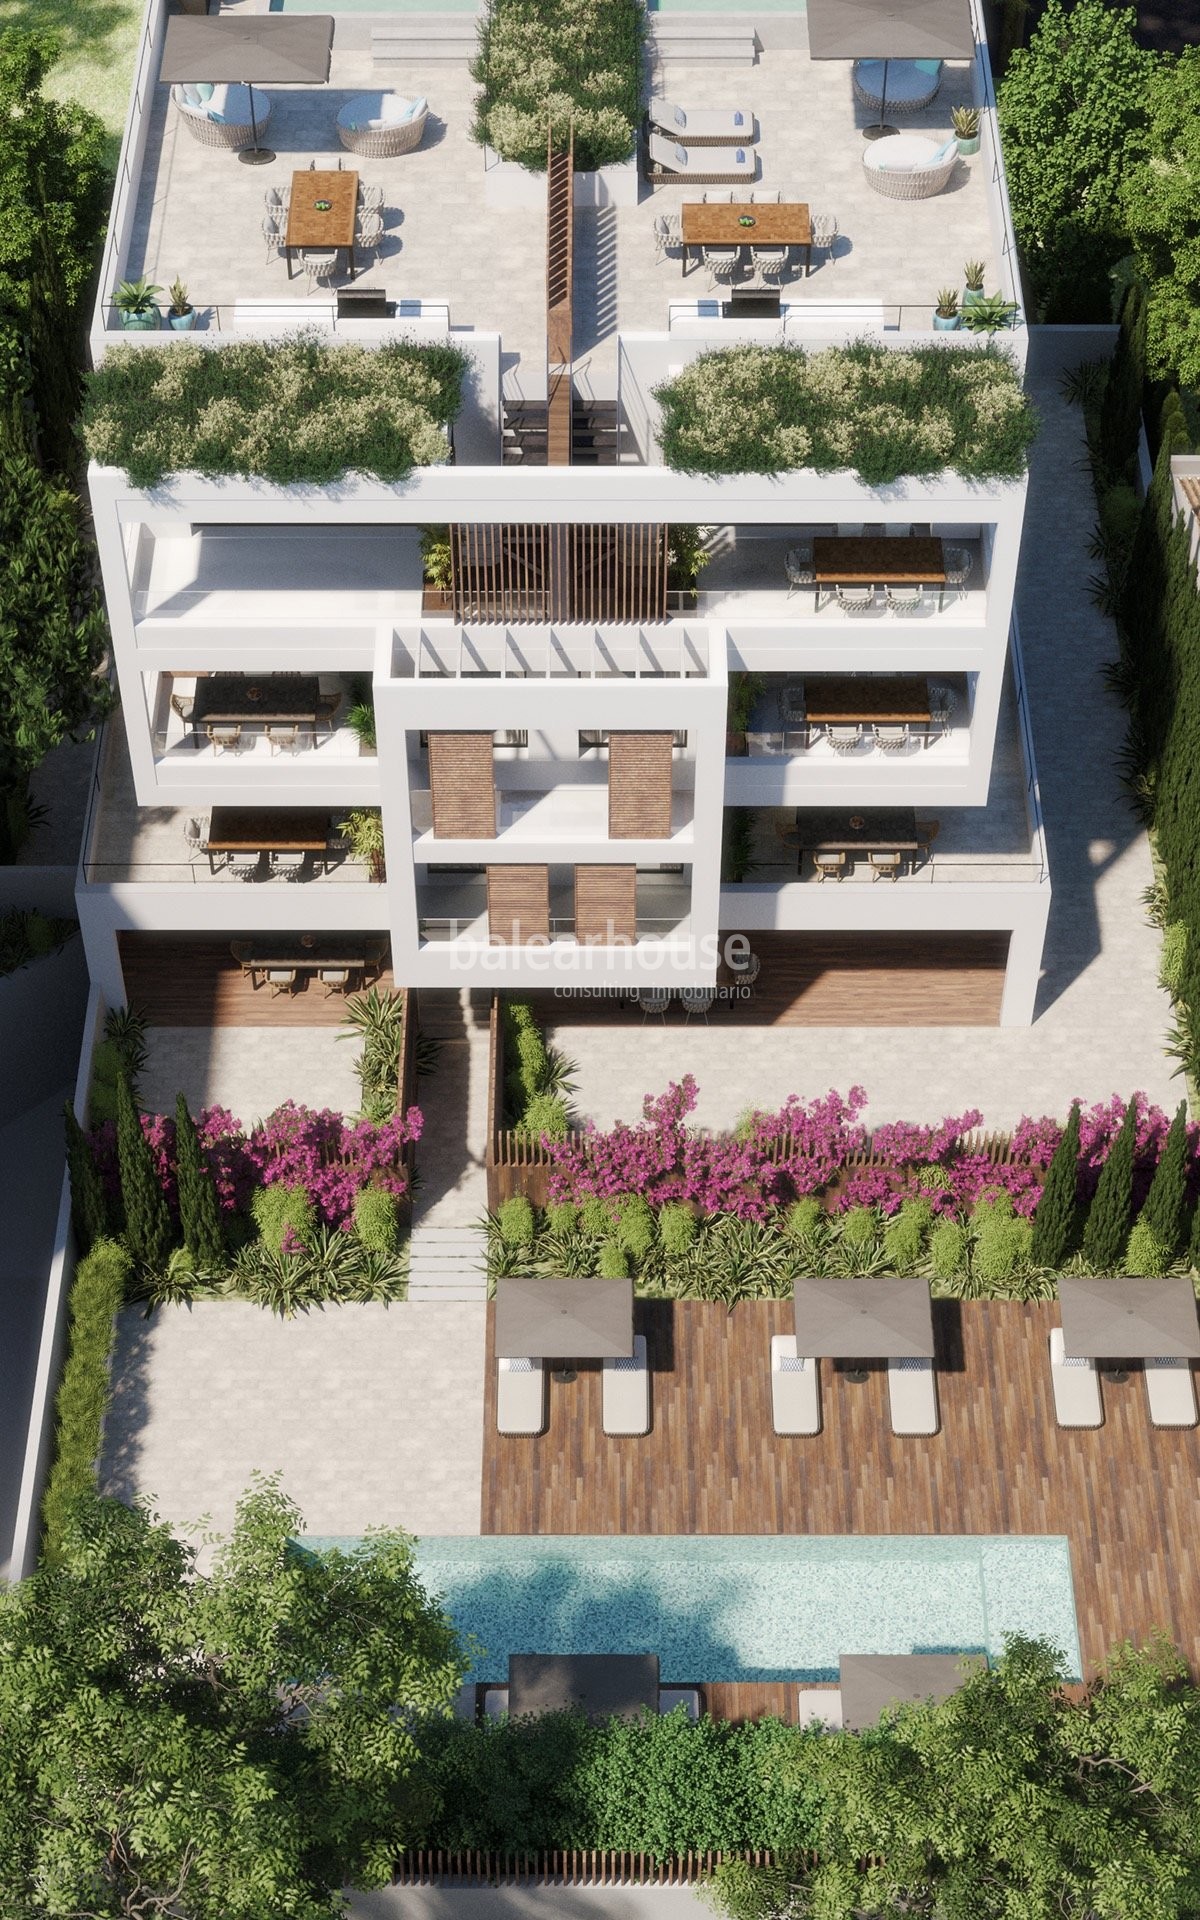 Contemporáneo proyecto de obra nueva en un tranquilo y verde entorno de Palma donde querer vivir